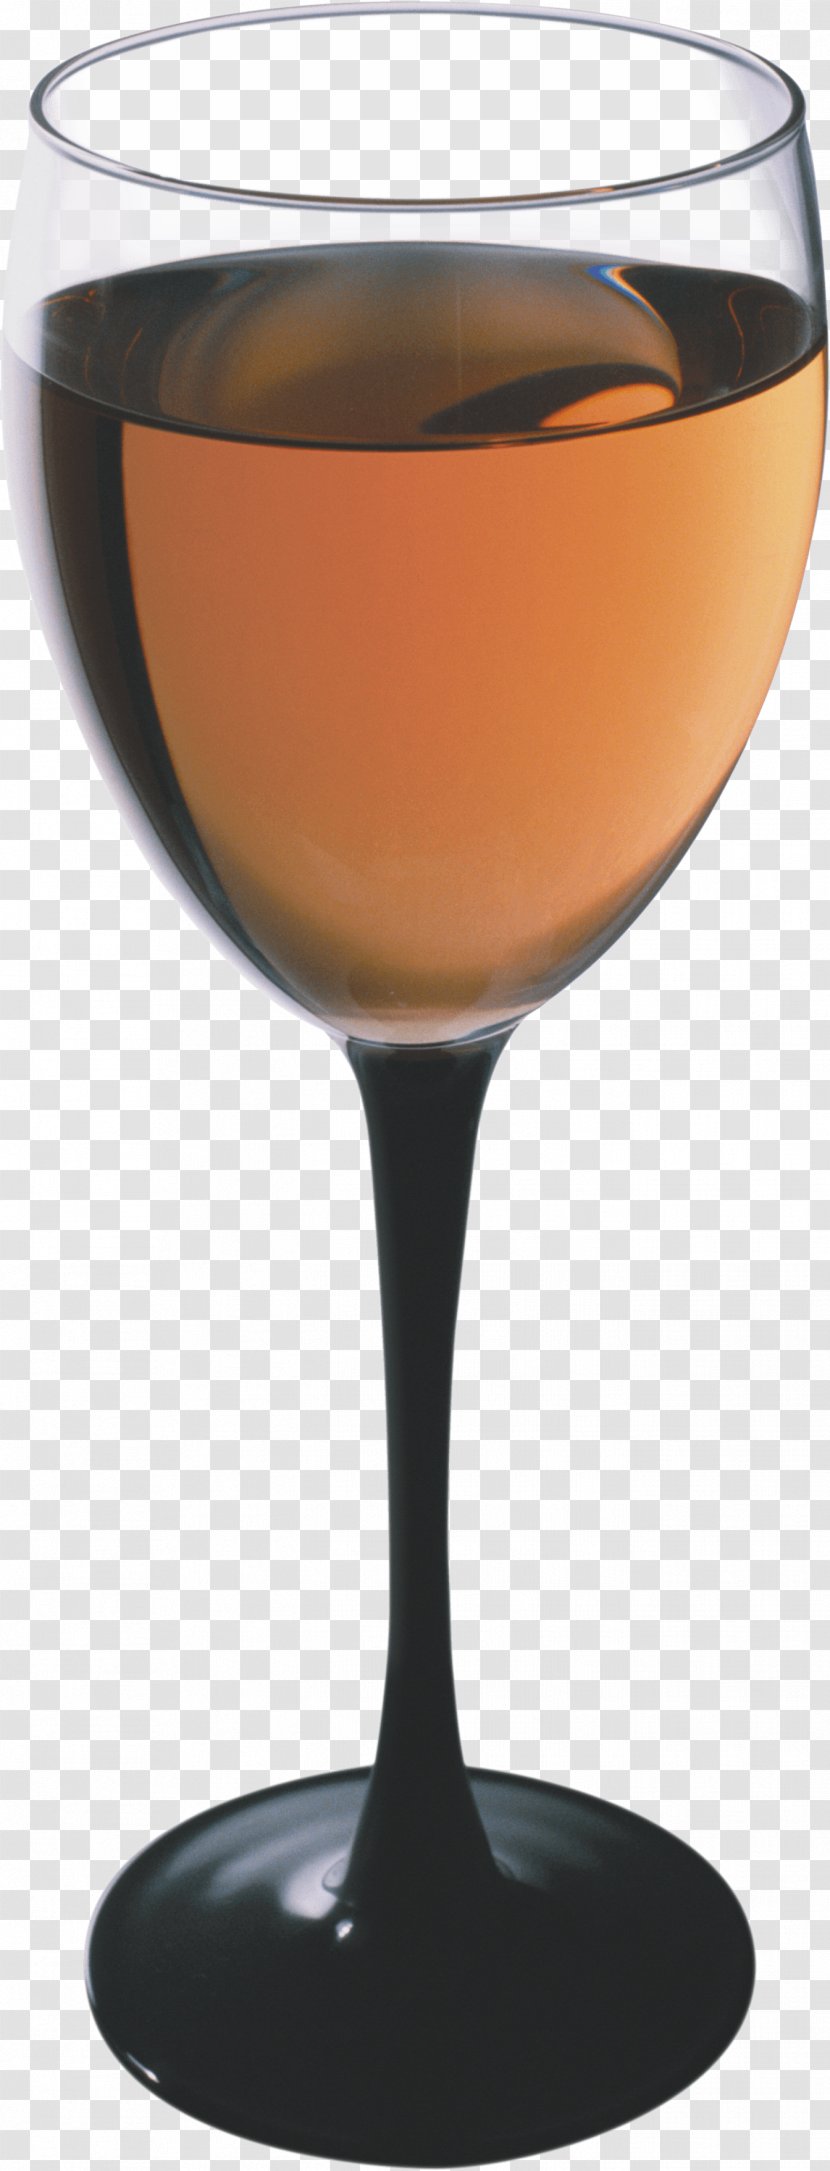 Glass Image - Caramel Color - Drinkware Transparent PNG